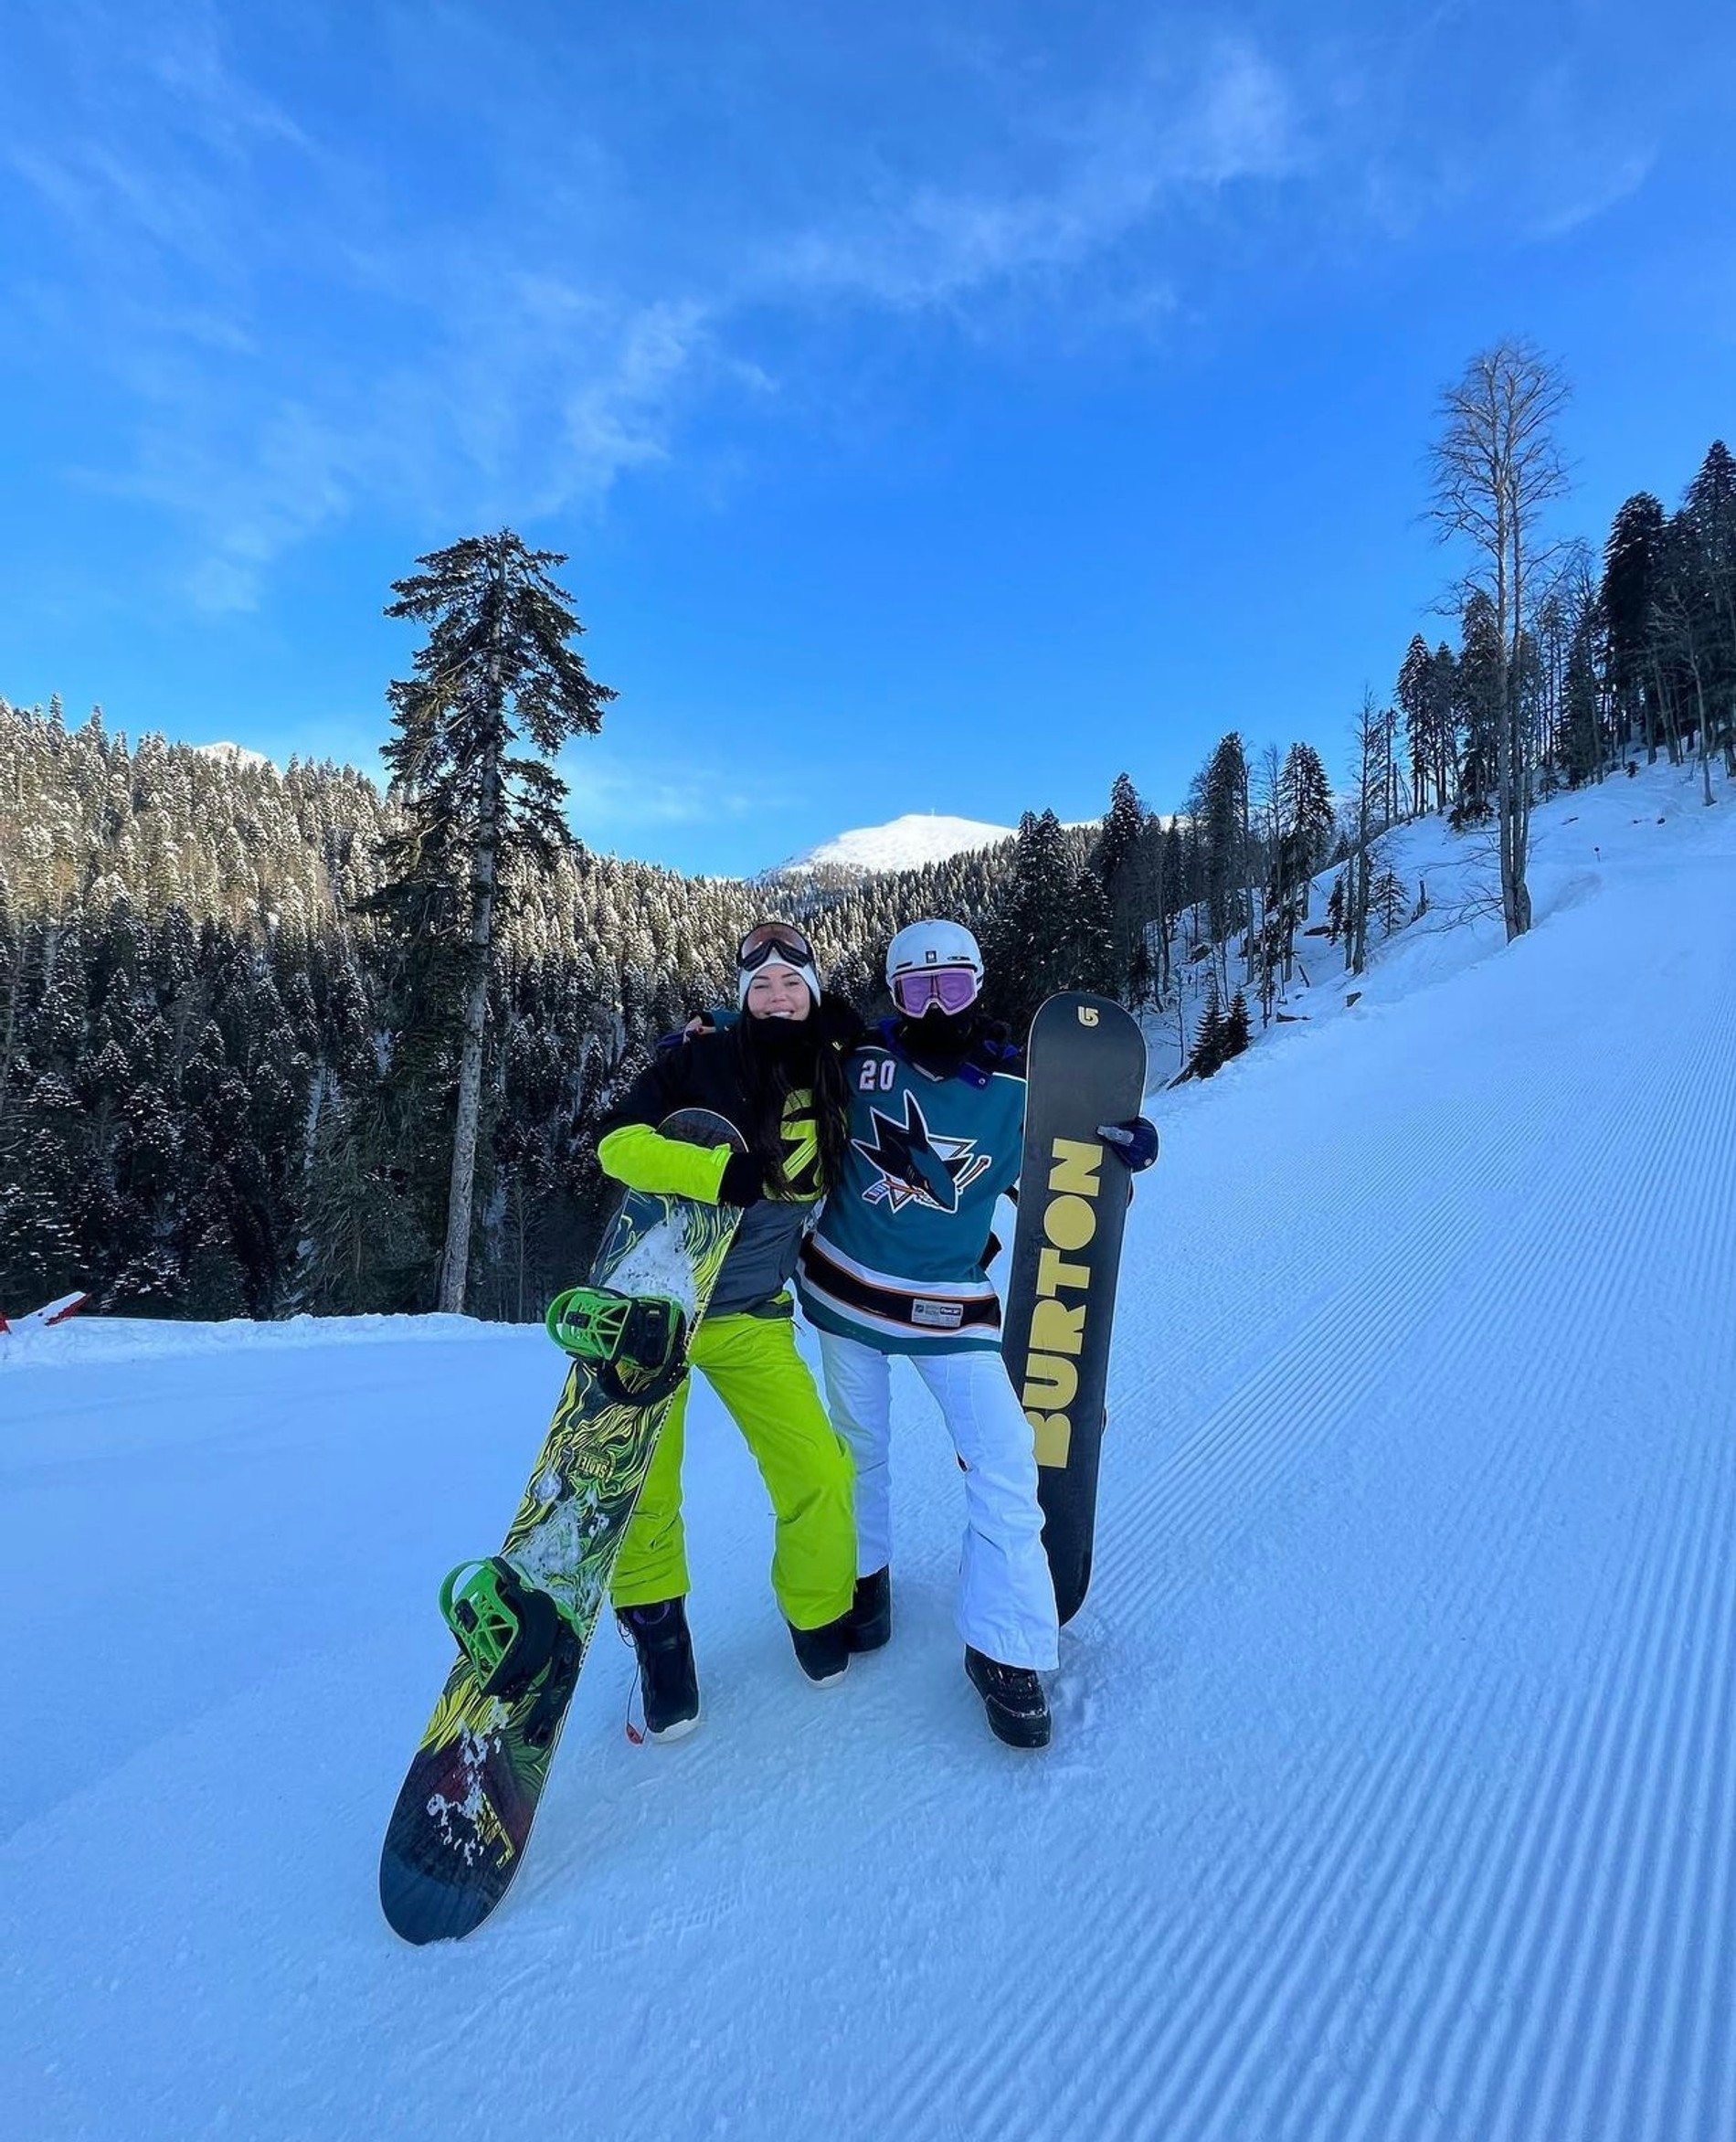 Оксана Самойлова и Ида Галич вместе отдыхают на горнолыжном курорте
Видео: Инстаграм (запрещен в РФ) @galichida